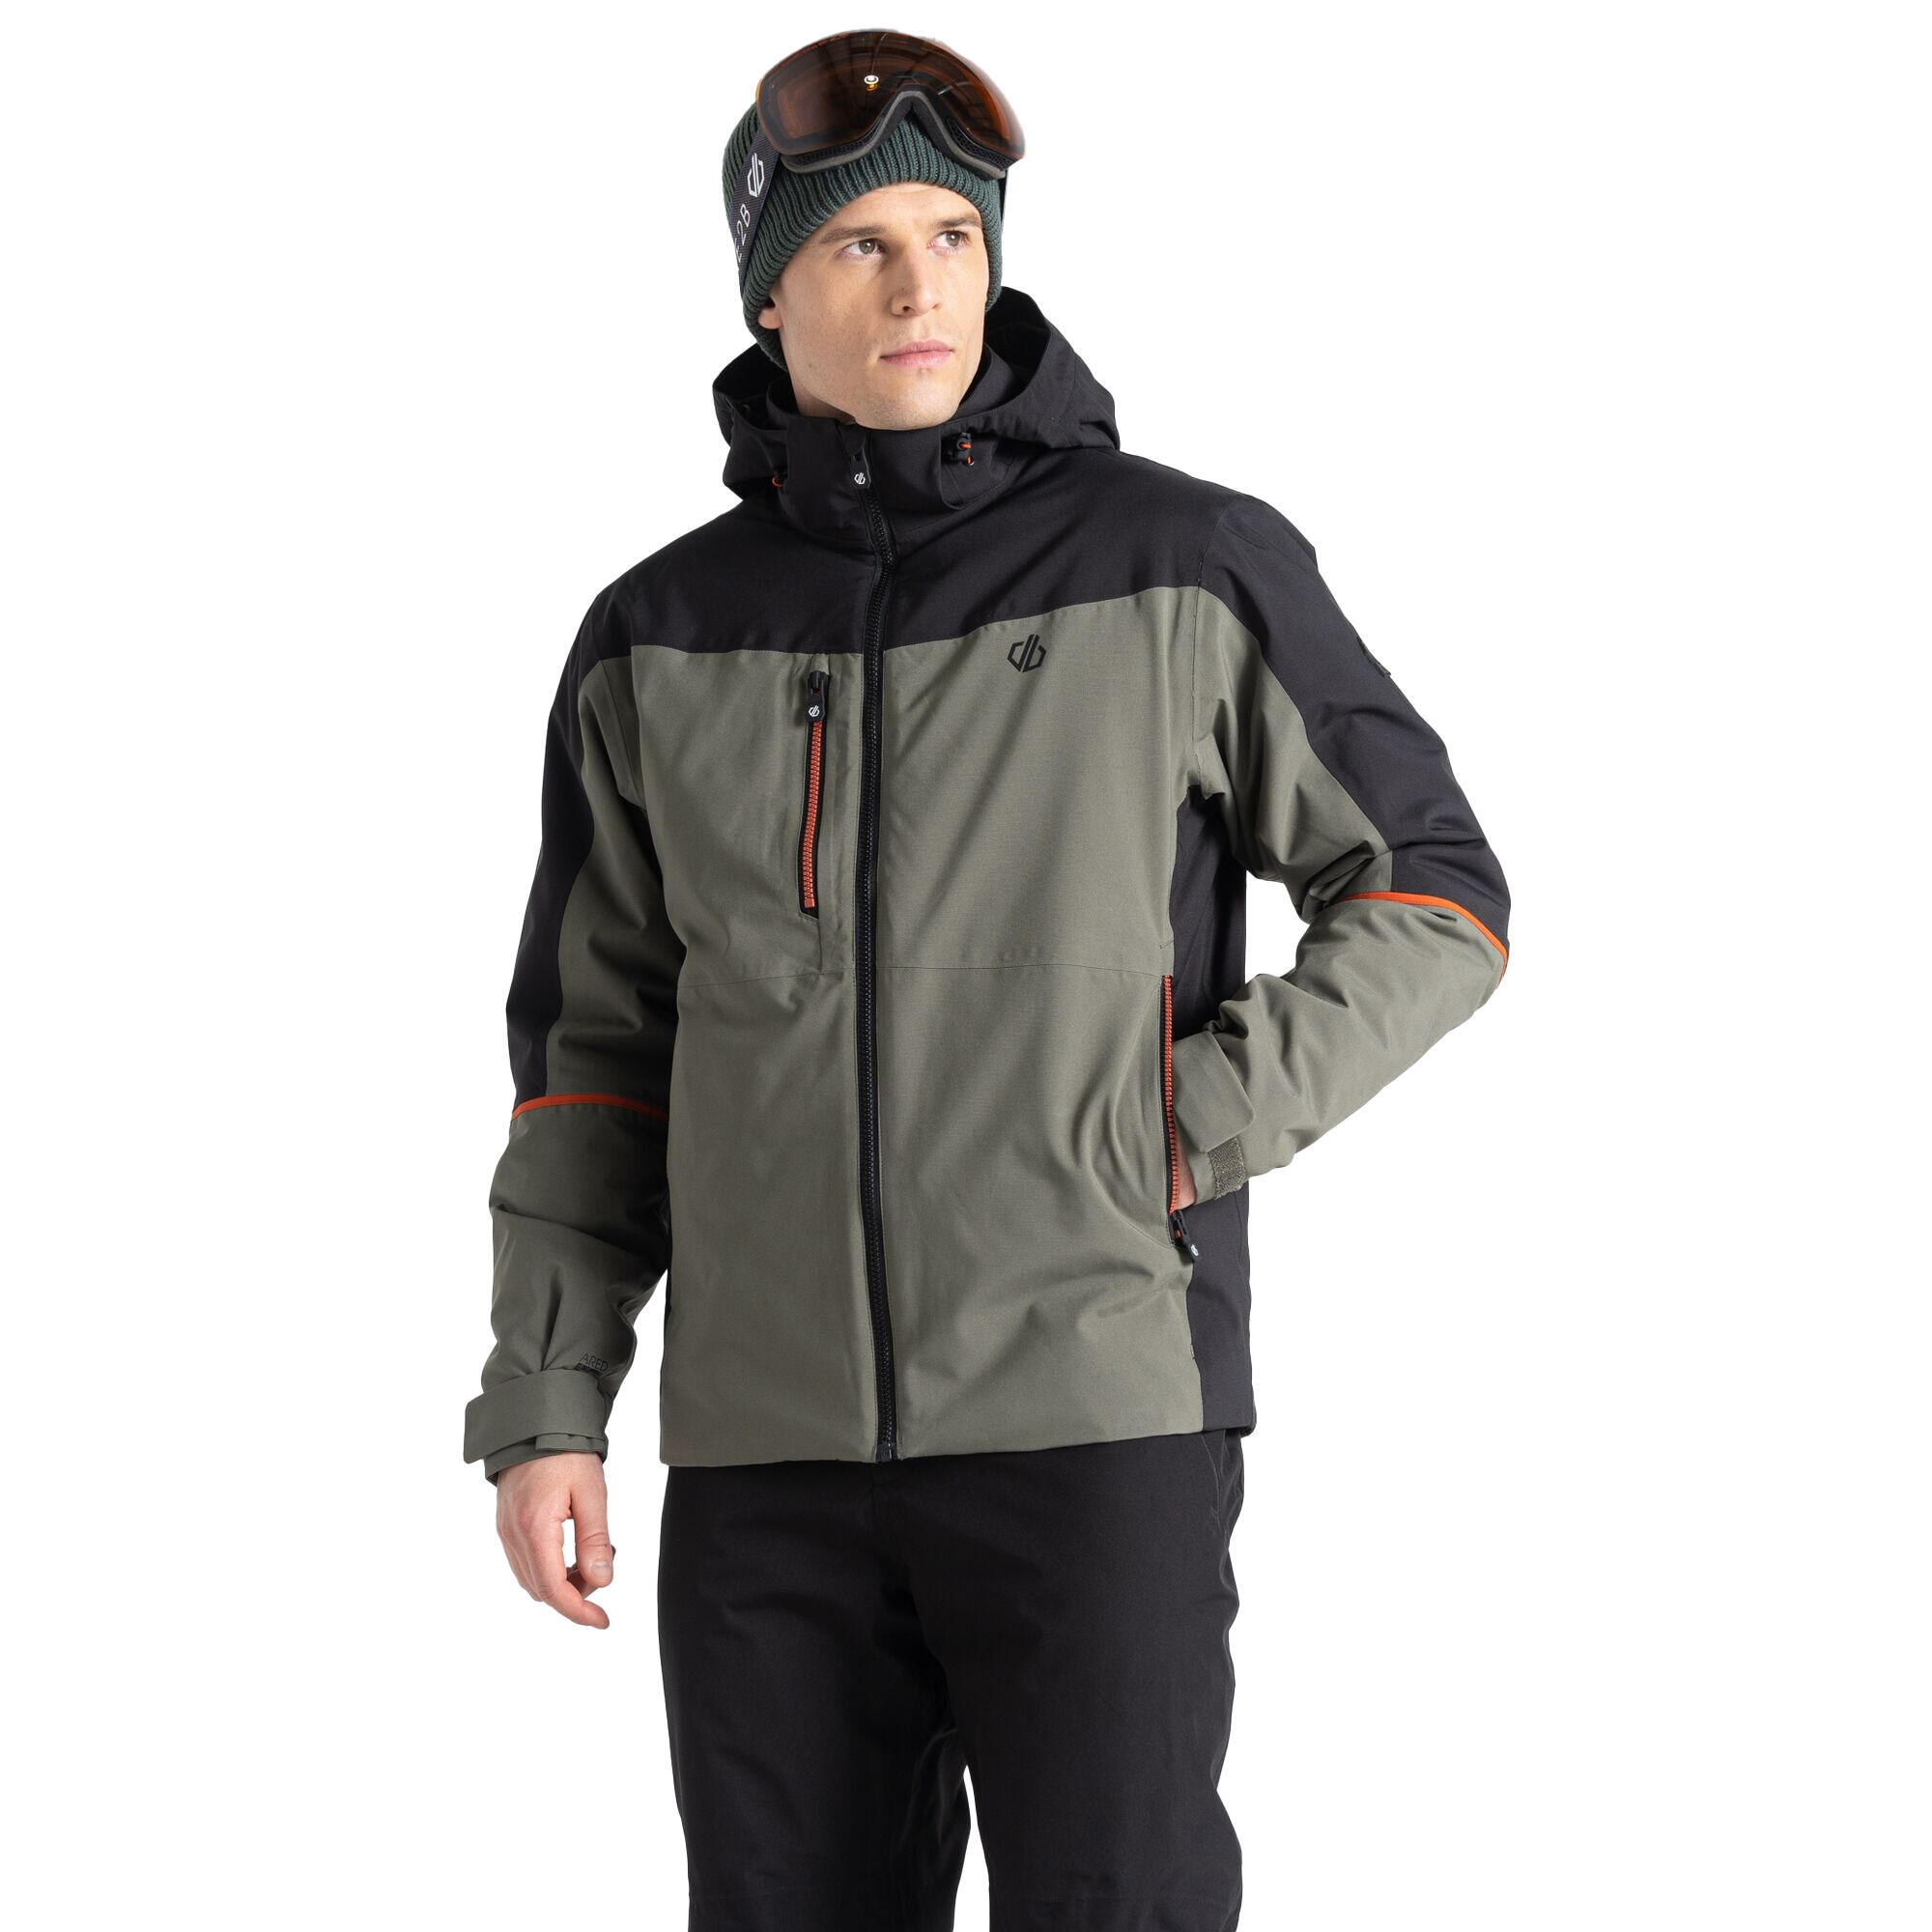 Mens Eagle Ski Jacket (Lichen Green/Black) 4/5